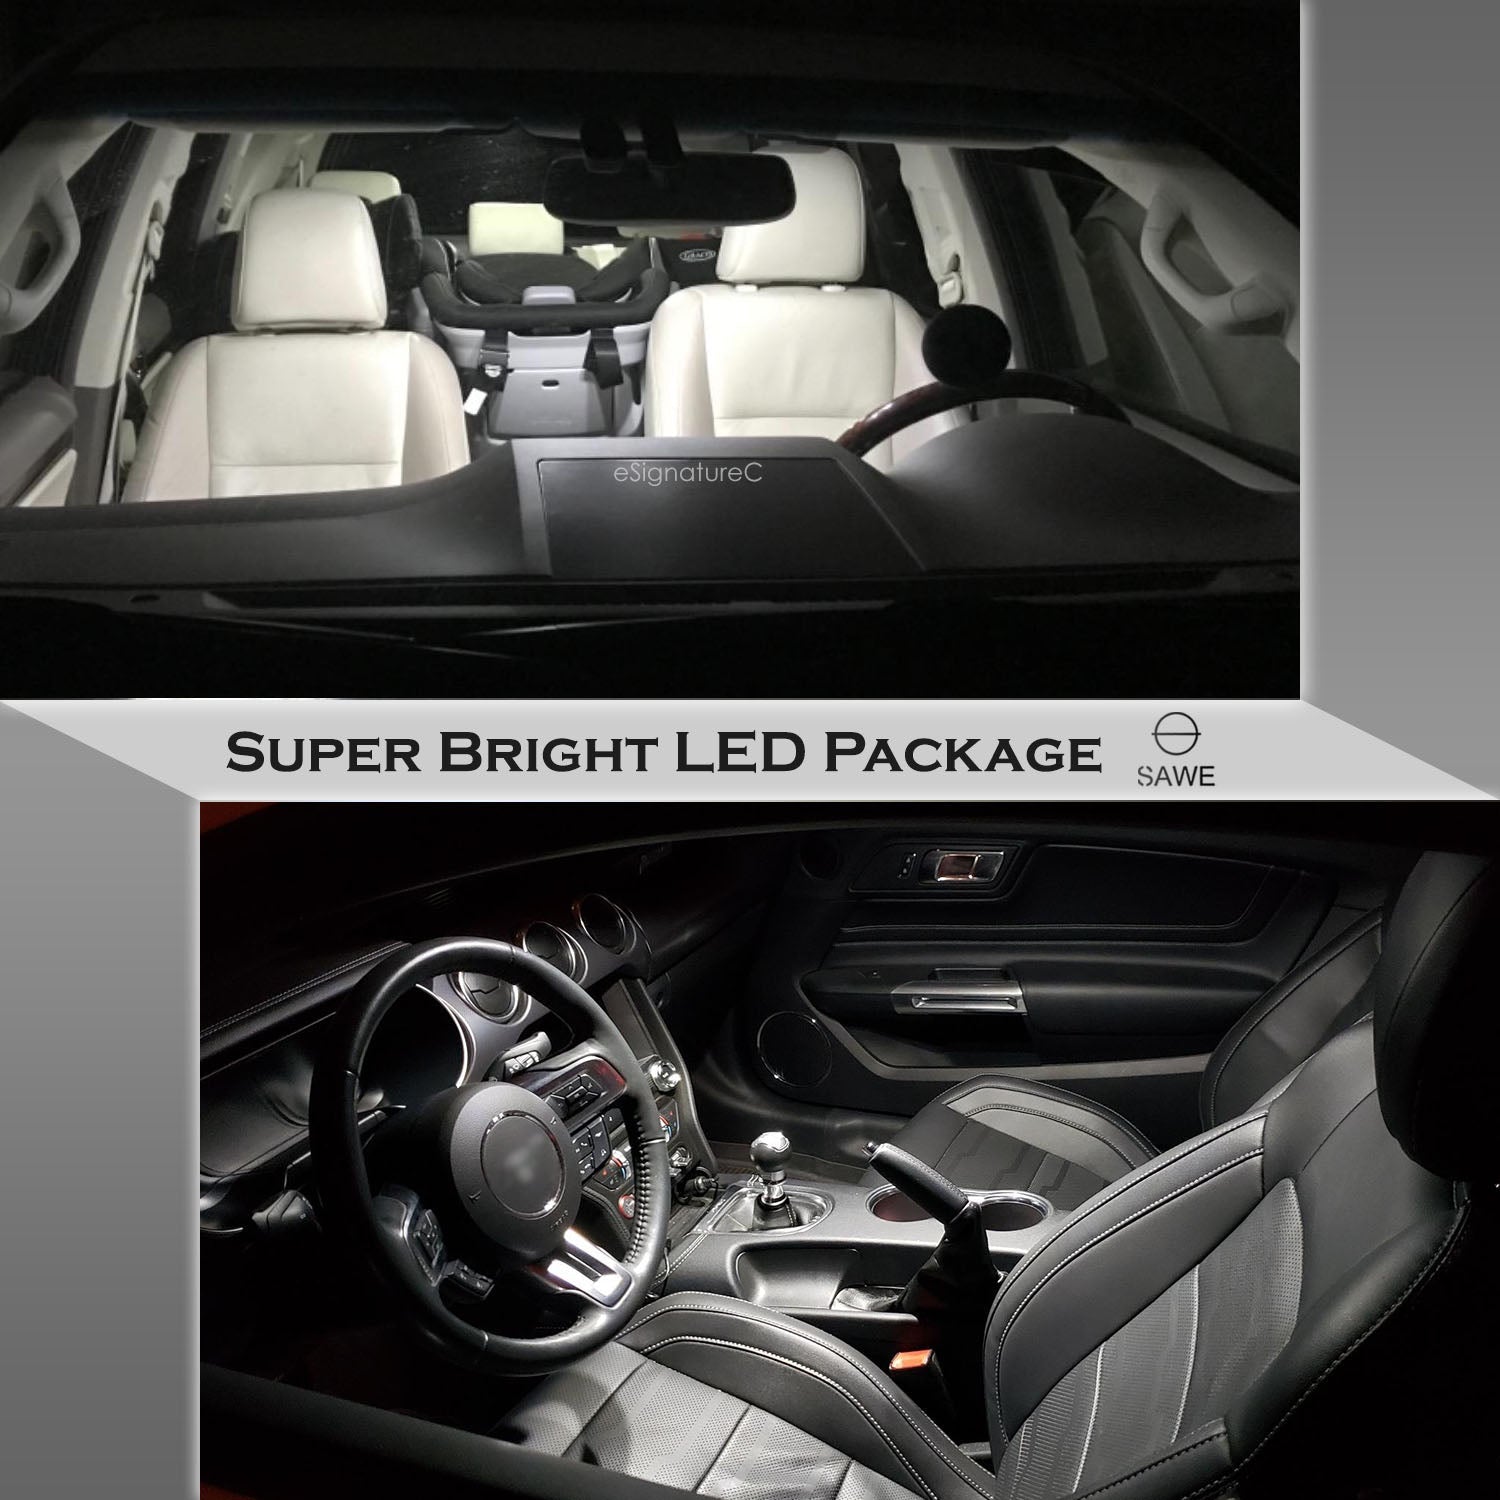 For GMC Sierra Interior LED Lights - Dome & Map Light Bulbs Package Kit for 2007 - 2014 - White